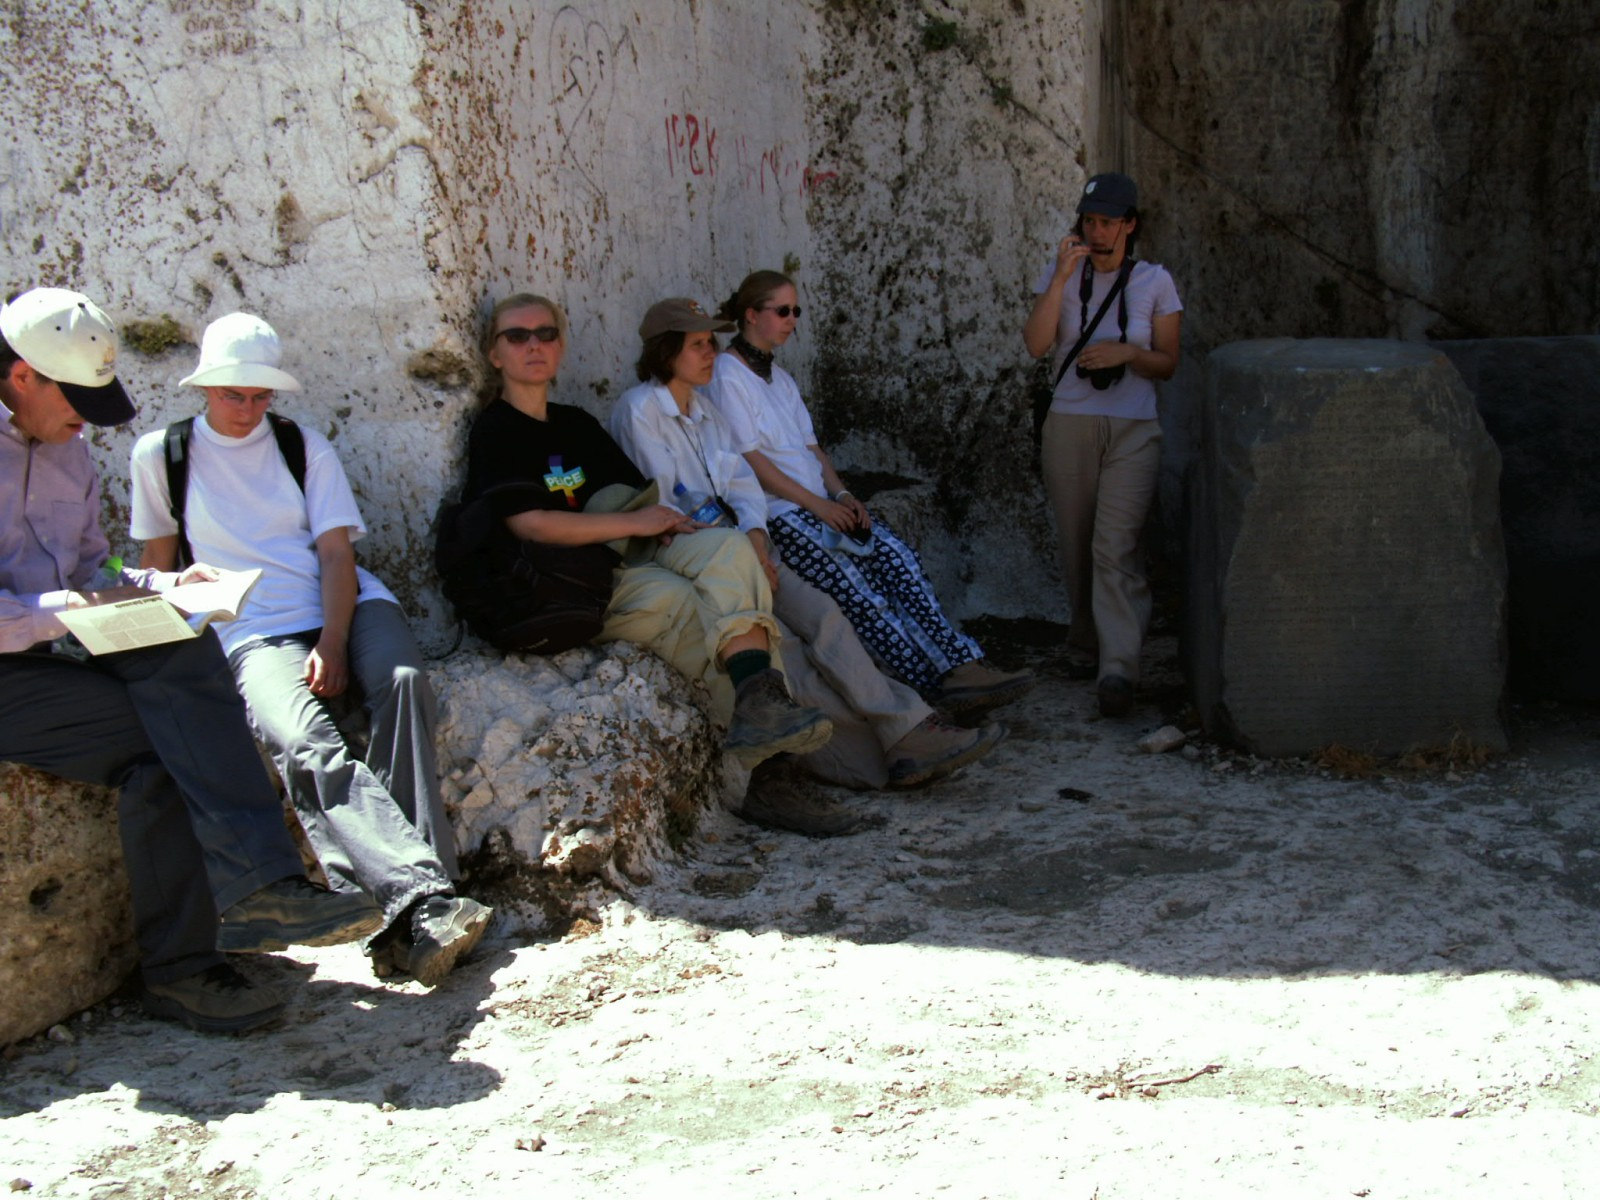 Wir kommen nun zur Kultterrasse Sarduris II. In den zwei Felsnischen befanden sich früher Stelen, wobei heute nur noch die in der rechten Nische erhalten ist.